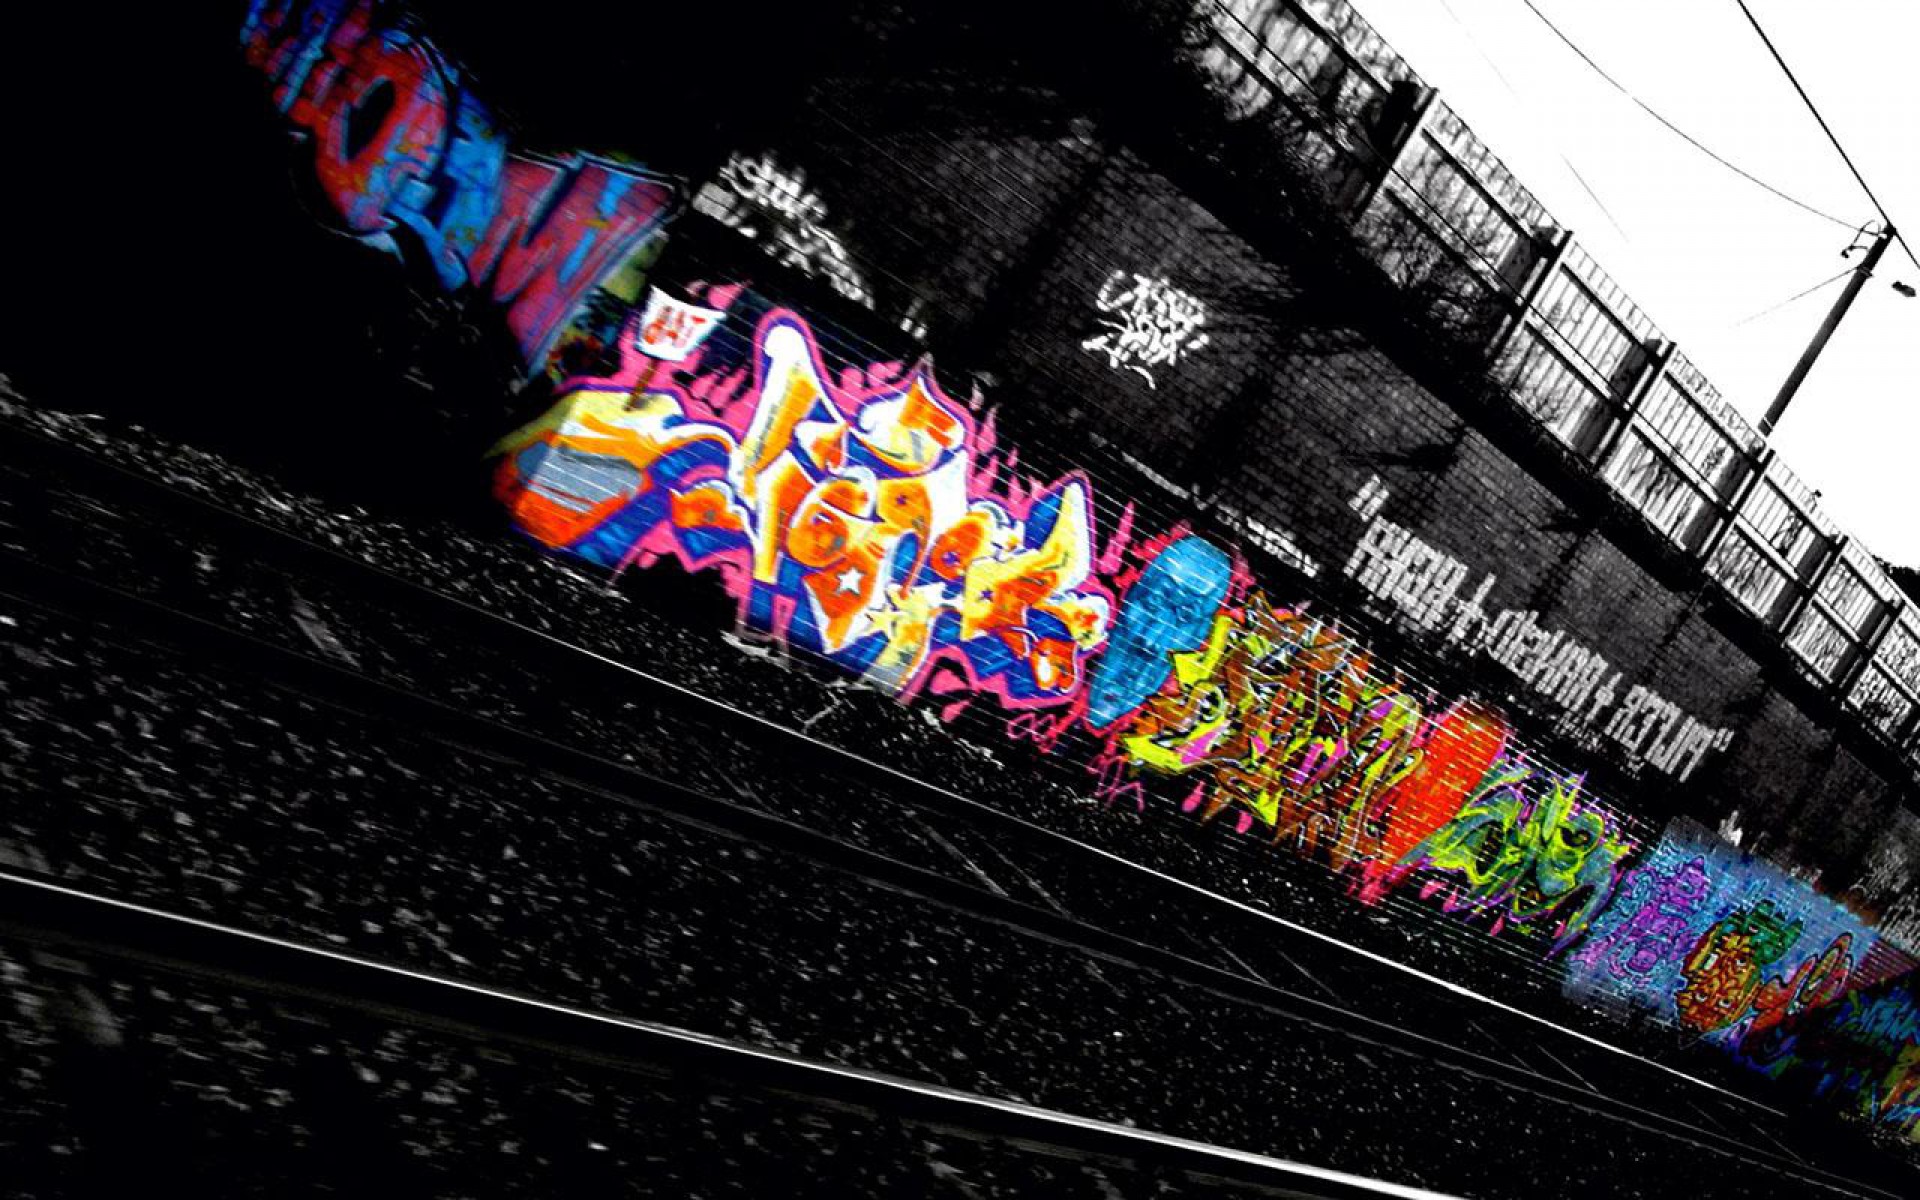 49+] HD Graffiti Wallpapers 1080p - WallpaperSafari